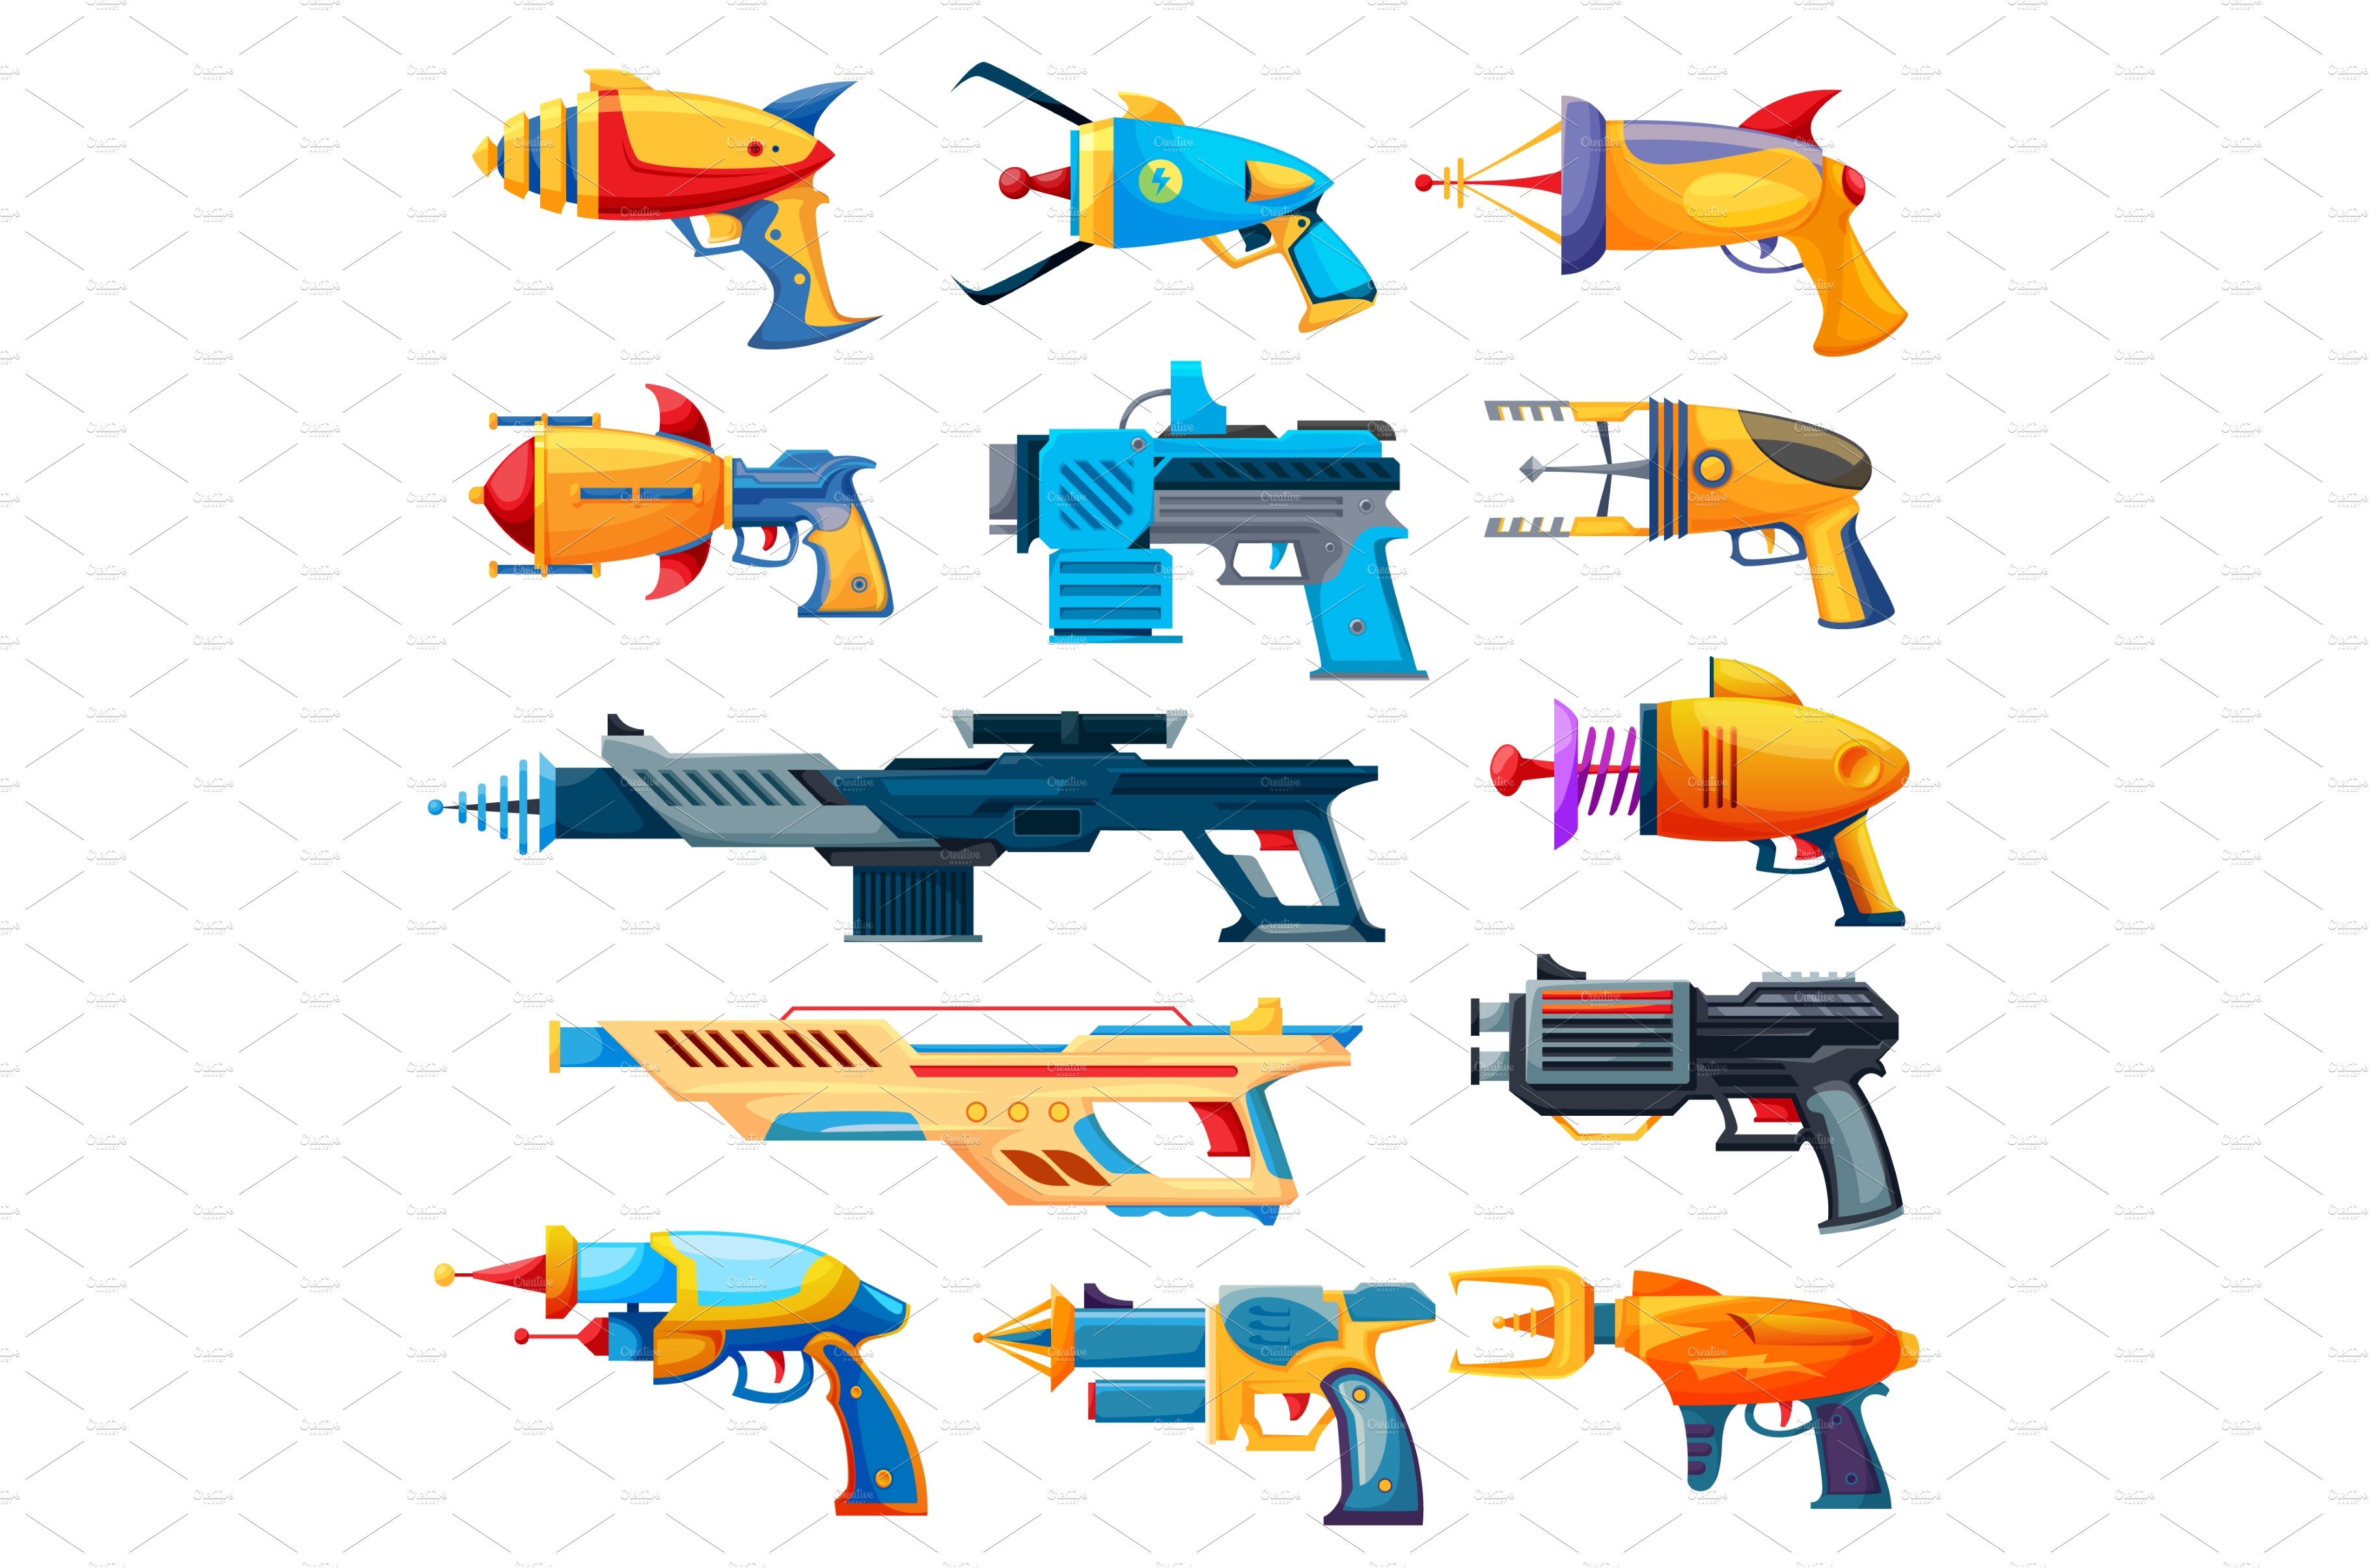 Blaster guns, handguns and rayguns cover image.